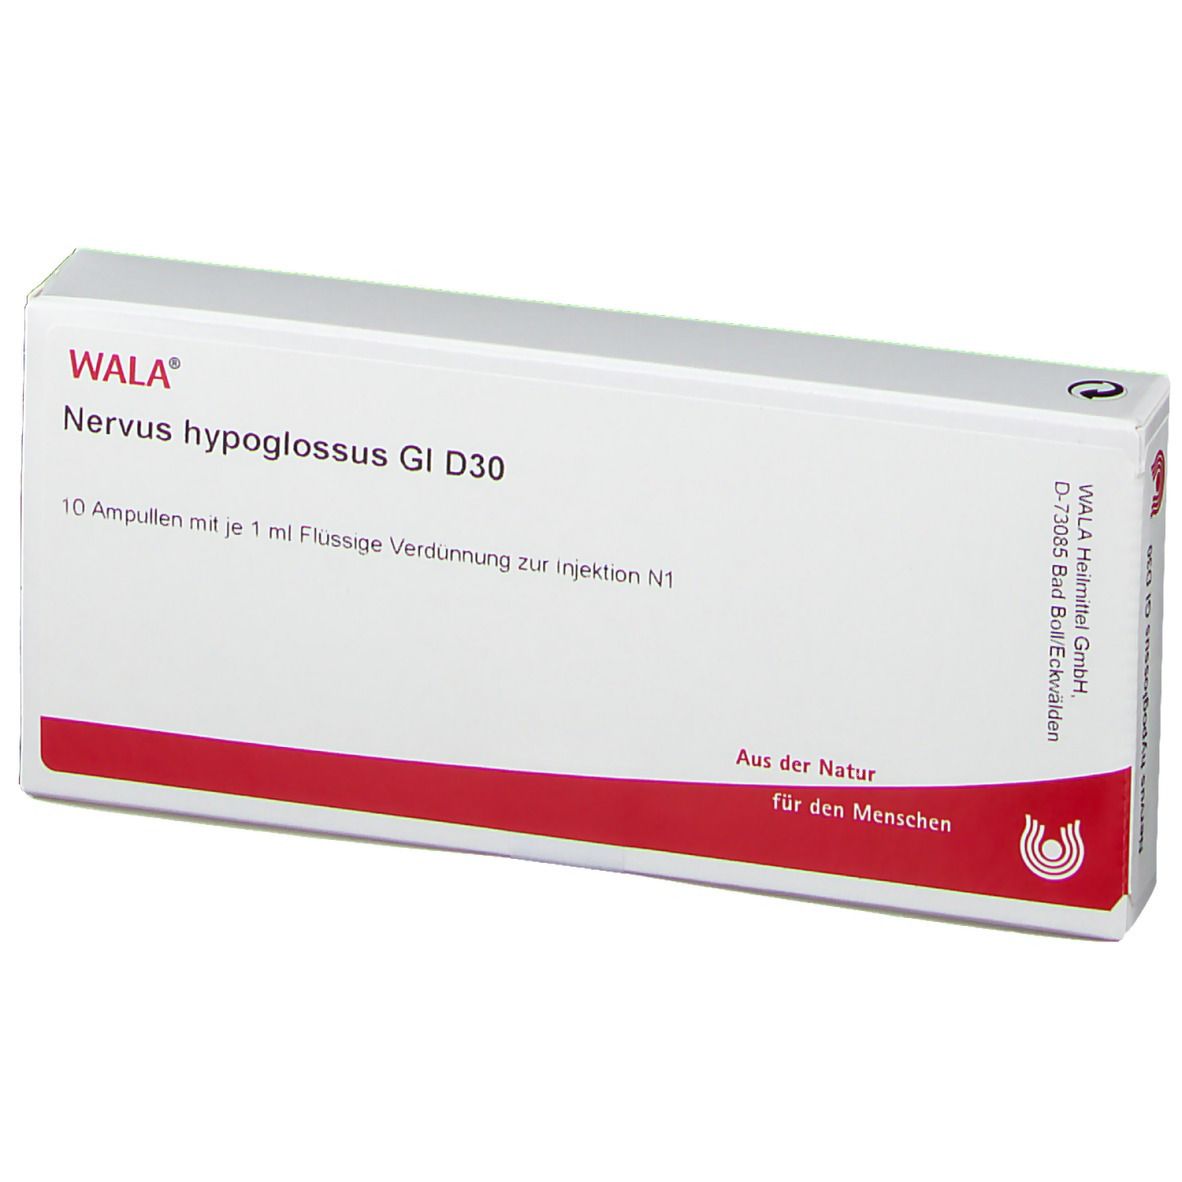 WALA® Nervus hypoglossus Gl D 30